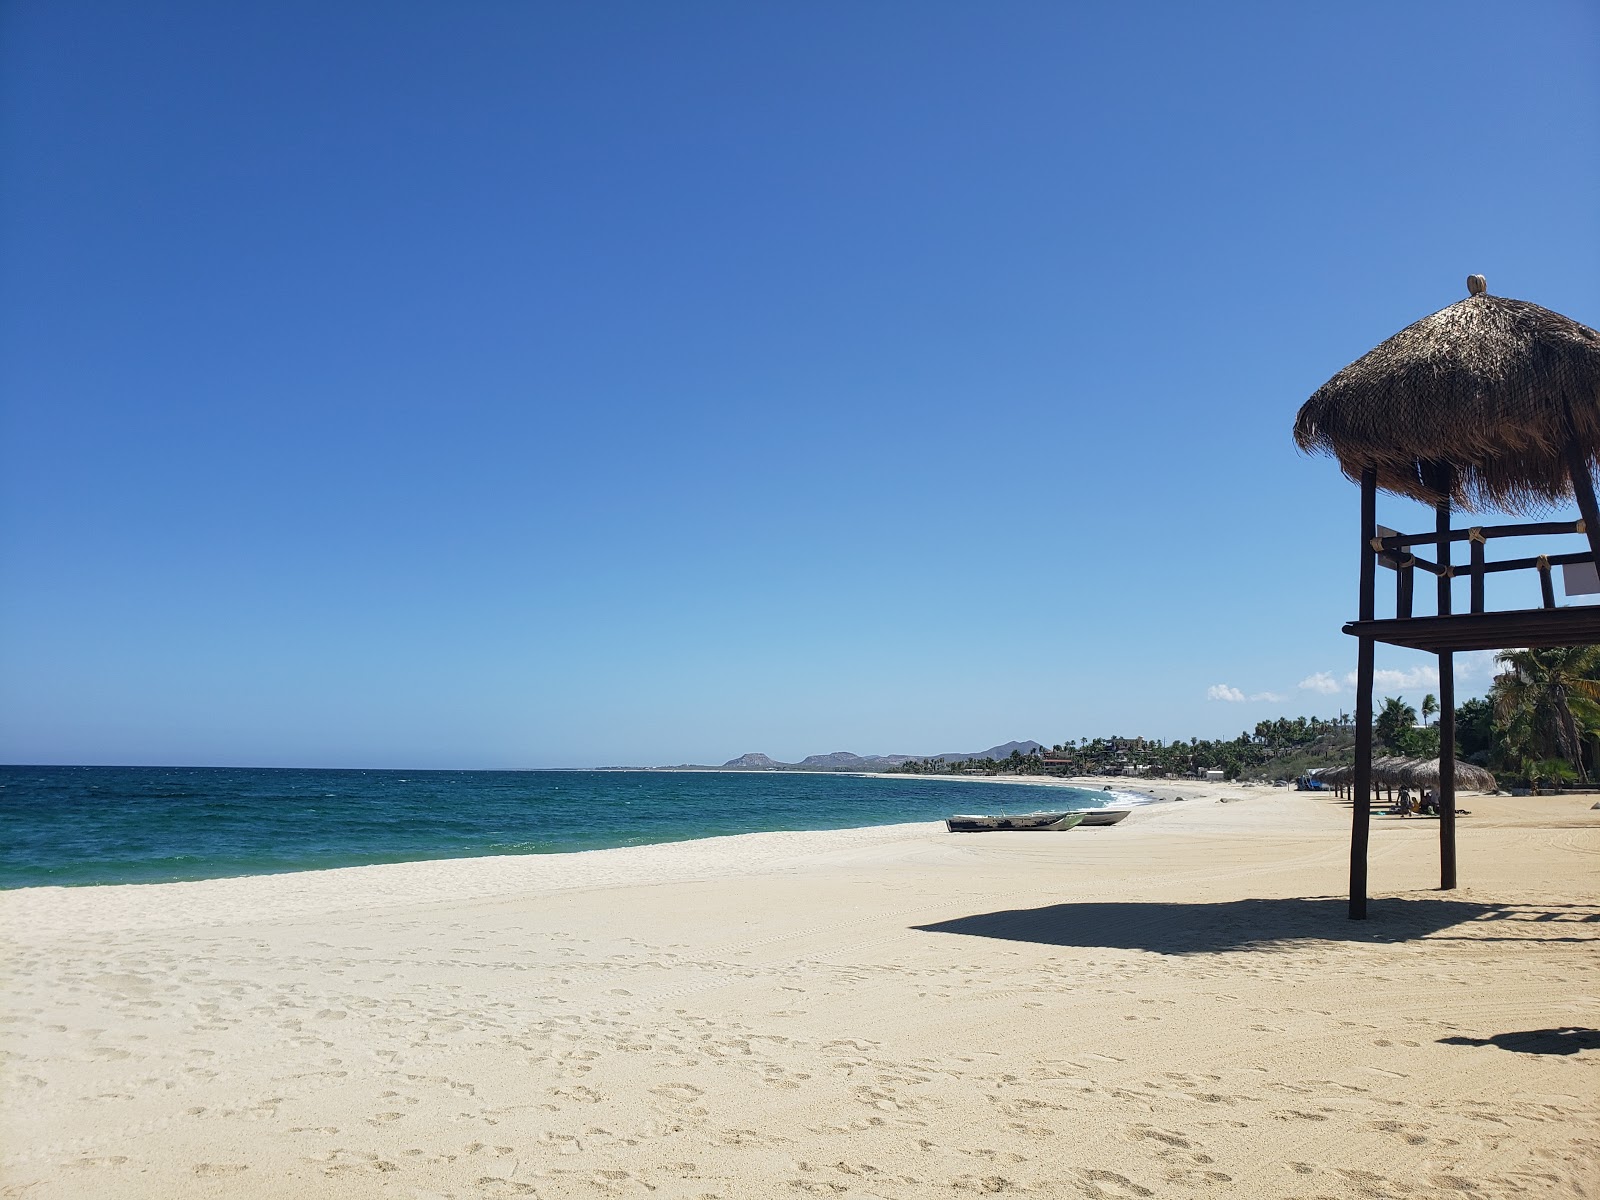 Photo de Playa buena vista - endroit populaire parmi les connaisseurs de la détente